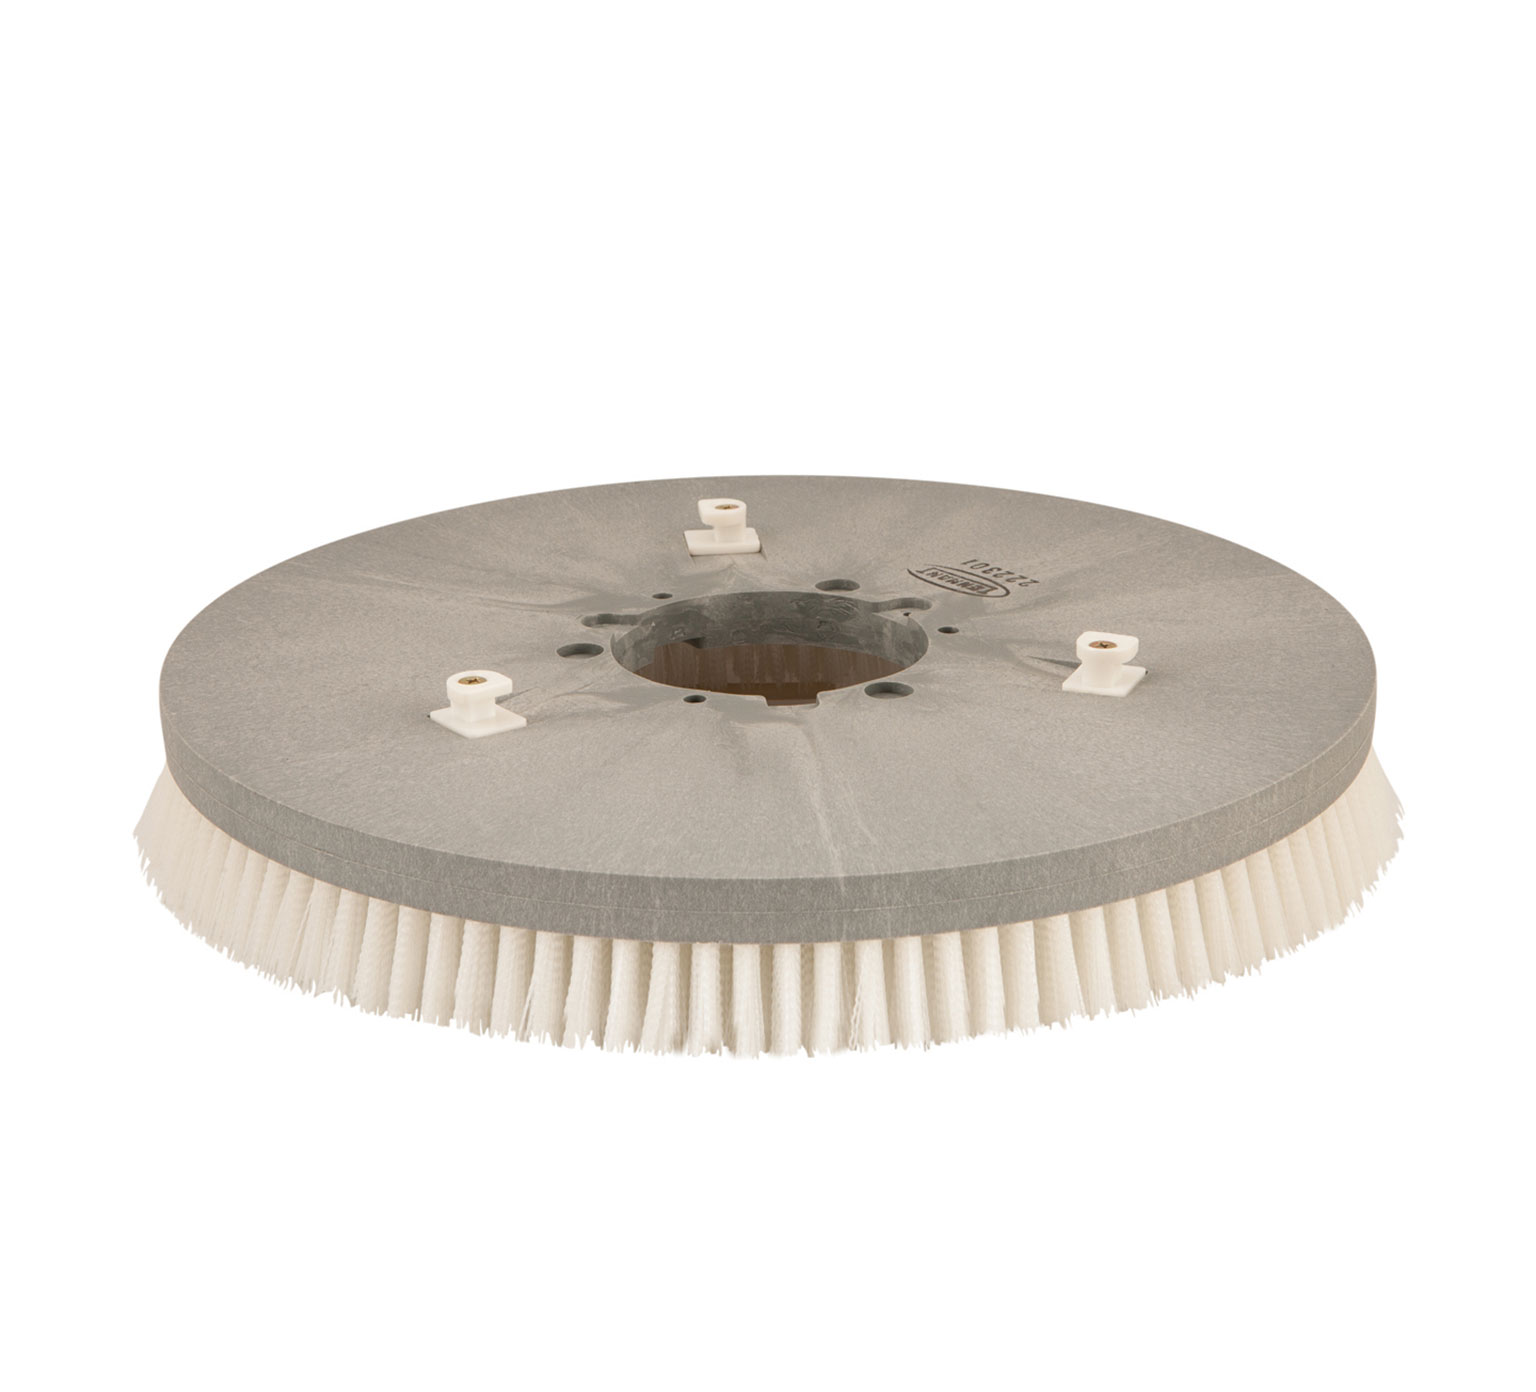 222301 Assemblage de brosse de récurage avec disque abrasif en nylon &#8211;  20 po / 508 mm alt 1